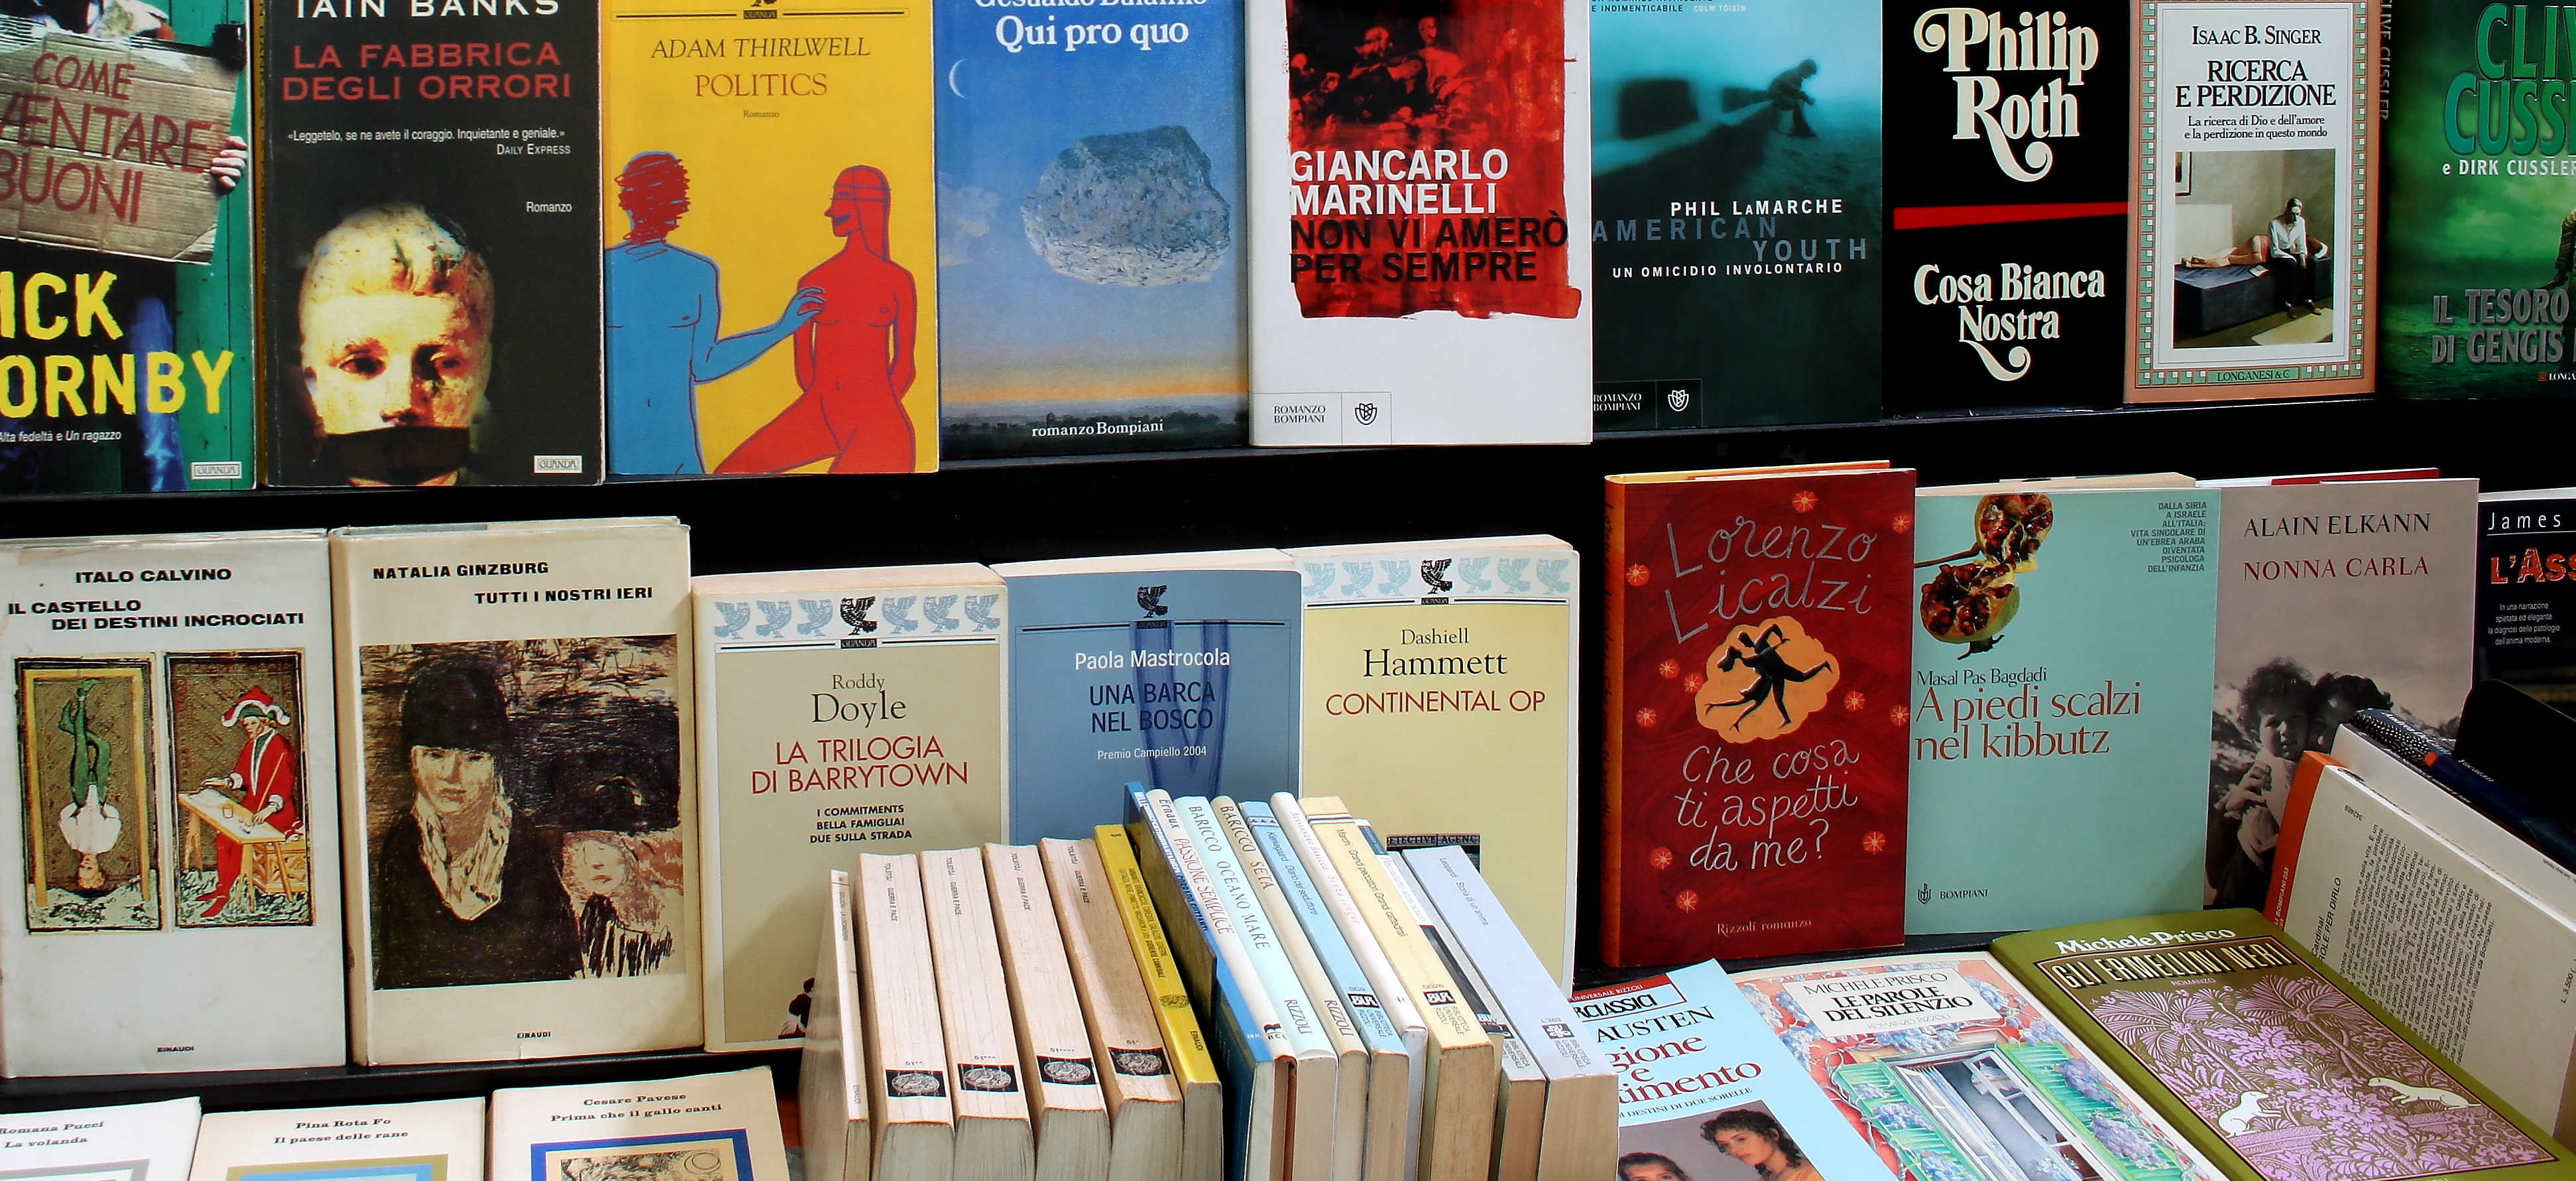 Libri usati nel negozio di Milano